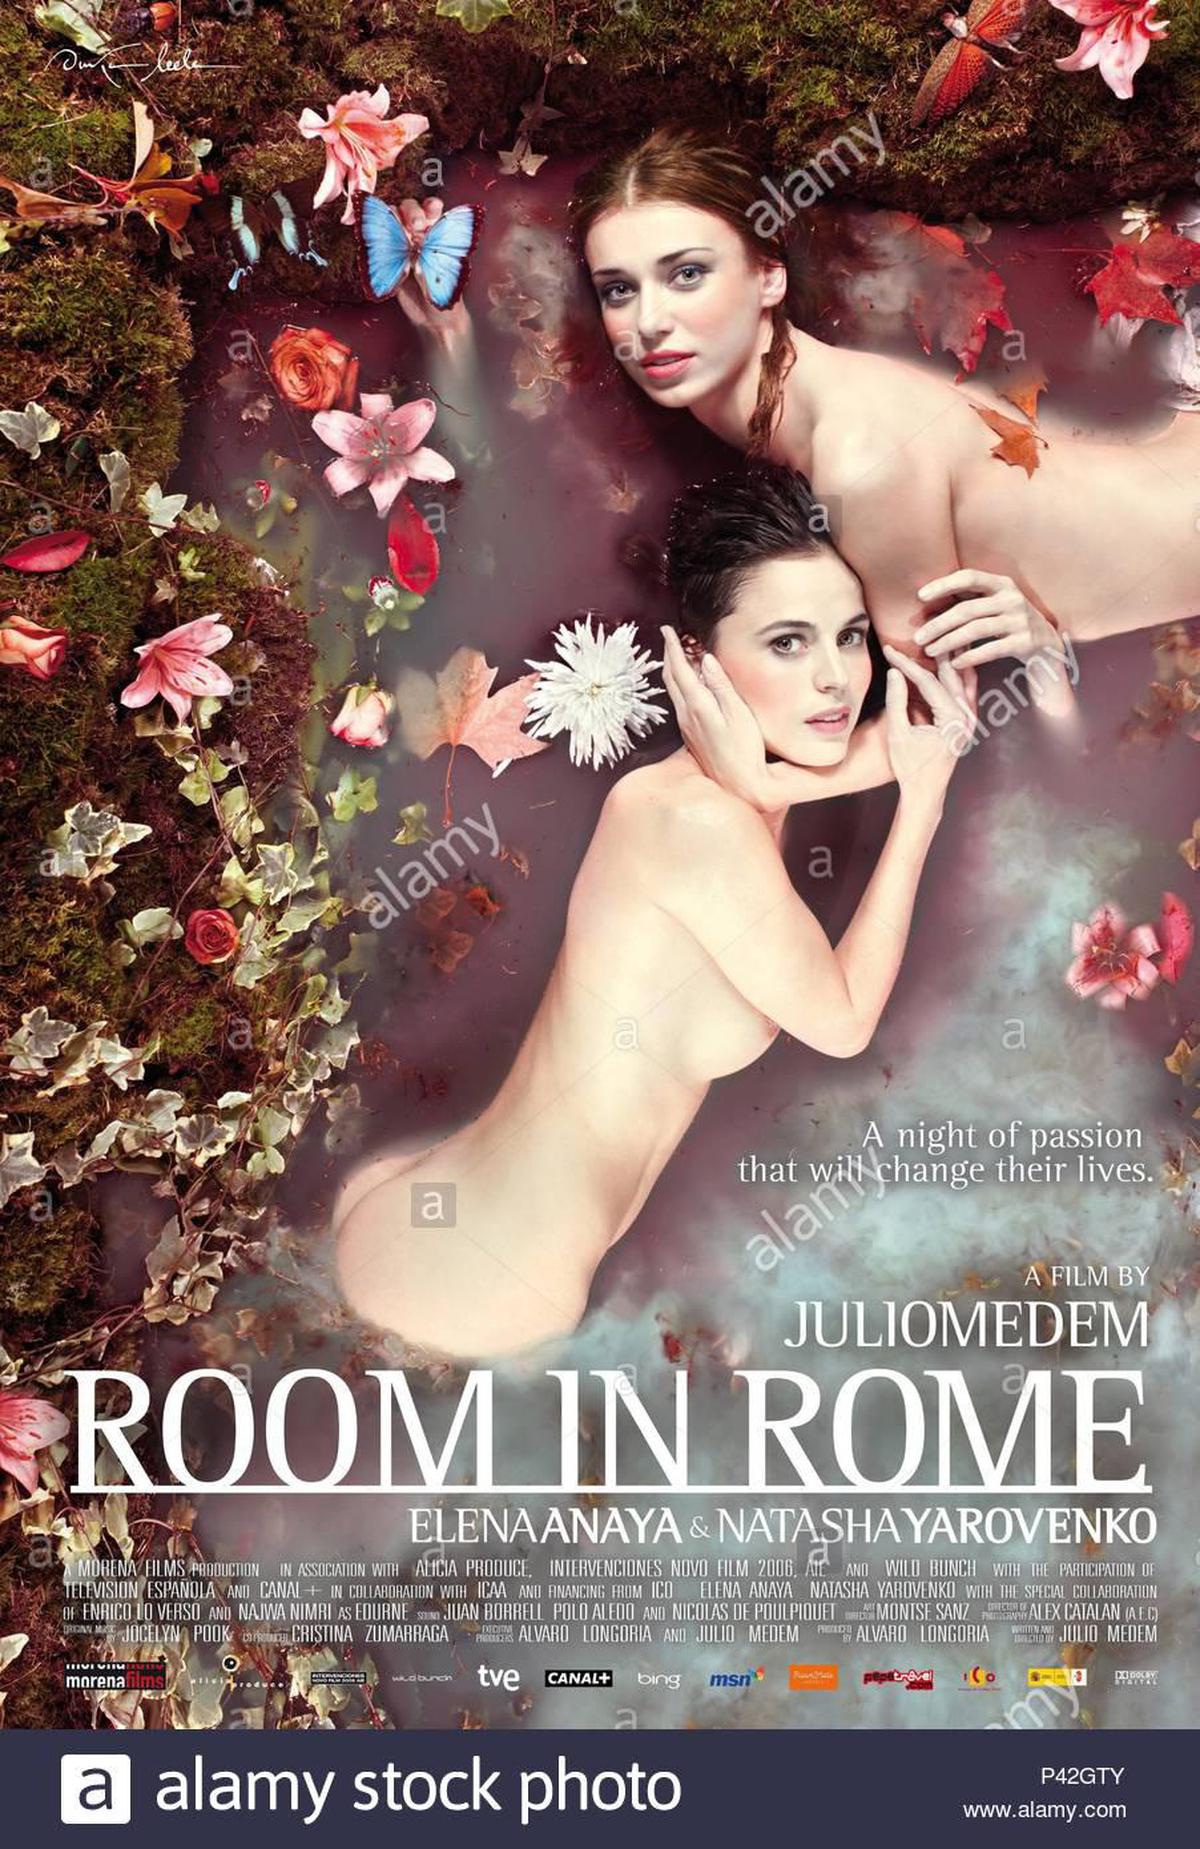 रोम में कमरा 2010